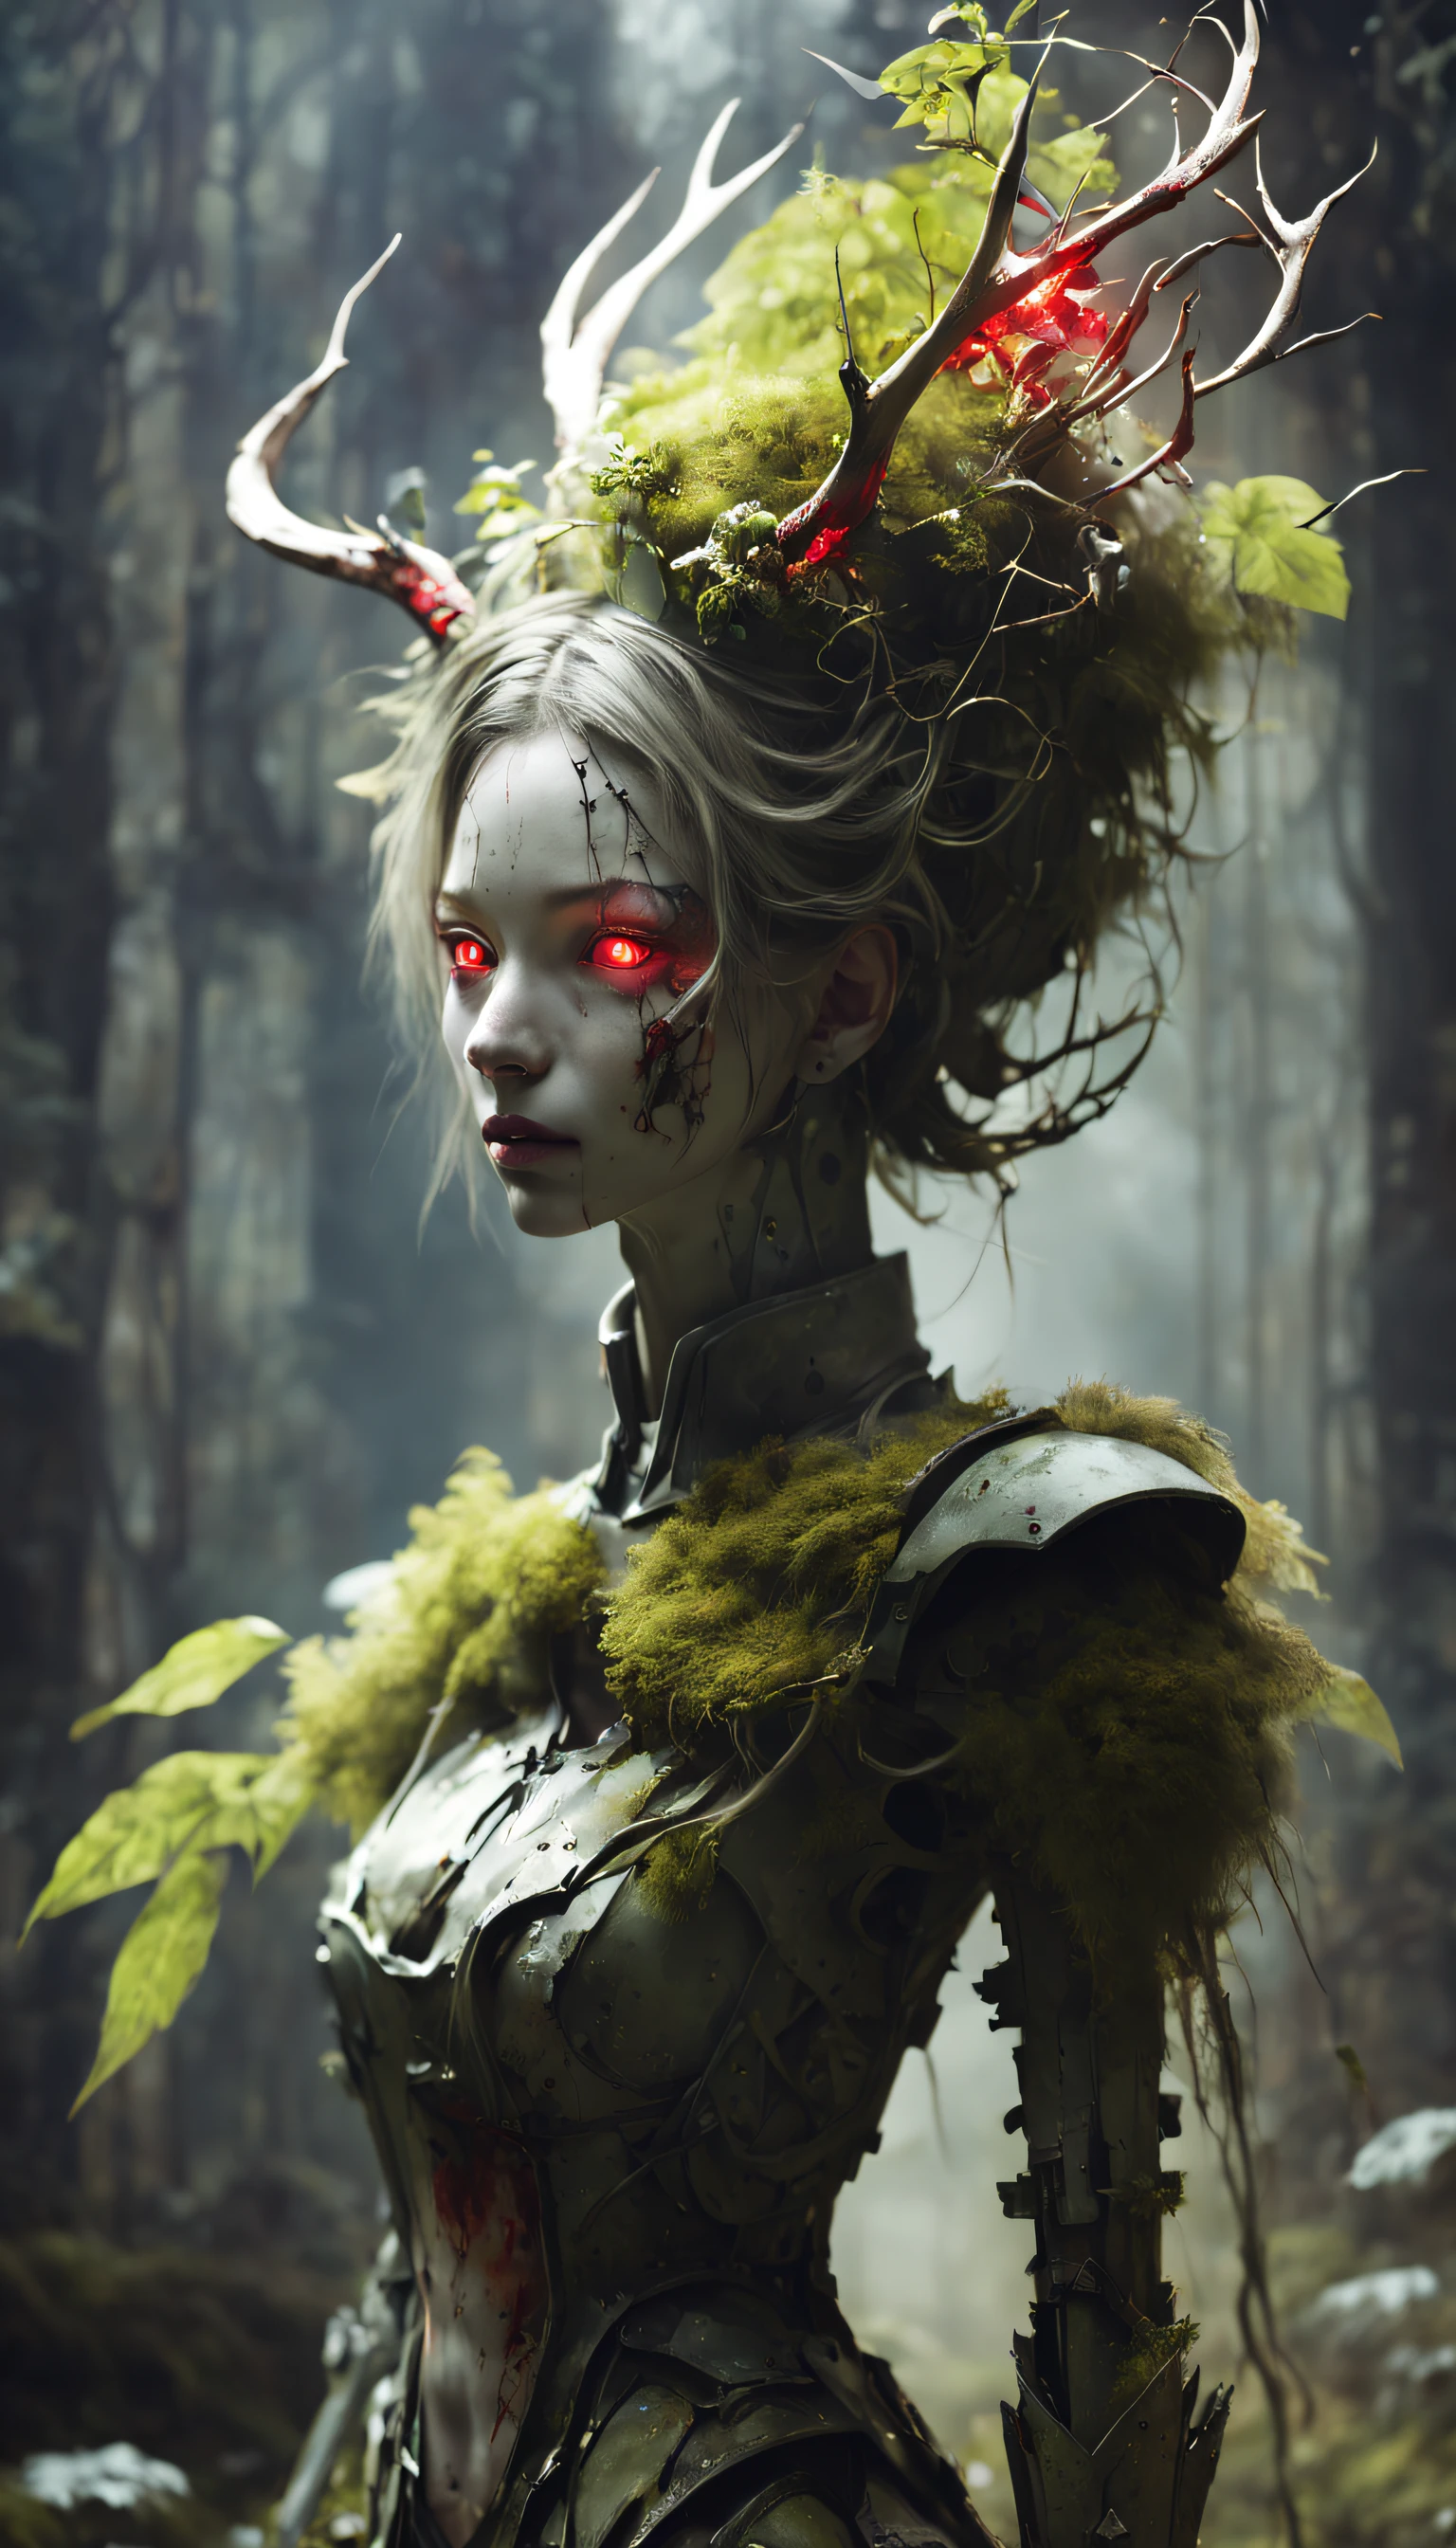 부서진 여성형 인간형 로봇,밤에, 그녀에게 빛이 비췄다, 찌그러진, 긁힌, 벗겨지는 페인트 벗겨짐, 버려진 내부 방에서, 이끼와 곰팡이, 한때 예뻤다,예술적인 사진,전신,(원격 촬영:1.4),근접 촬영 50mm f/1.3,bailong 식물 girl, girl made of dead 식물s,a girl made of red 식물s,숲,식물,뿔